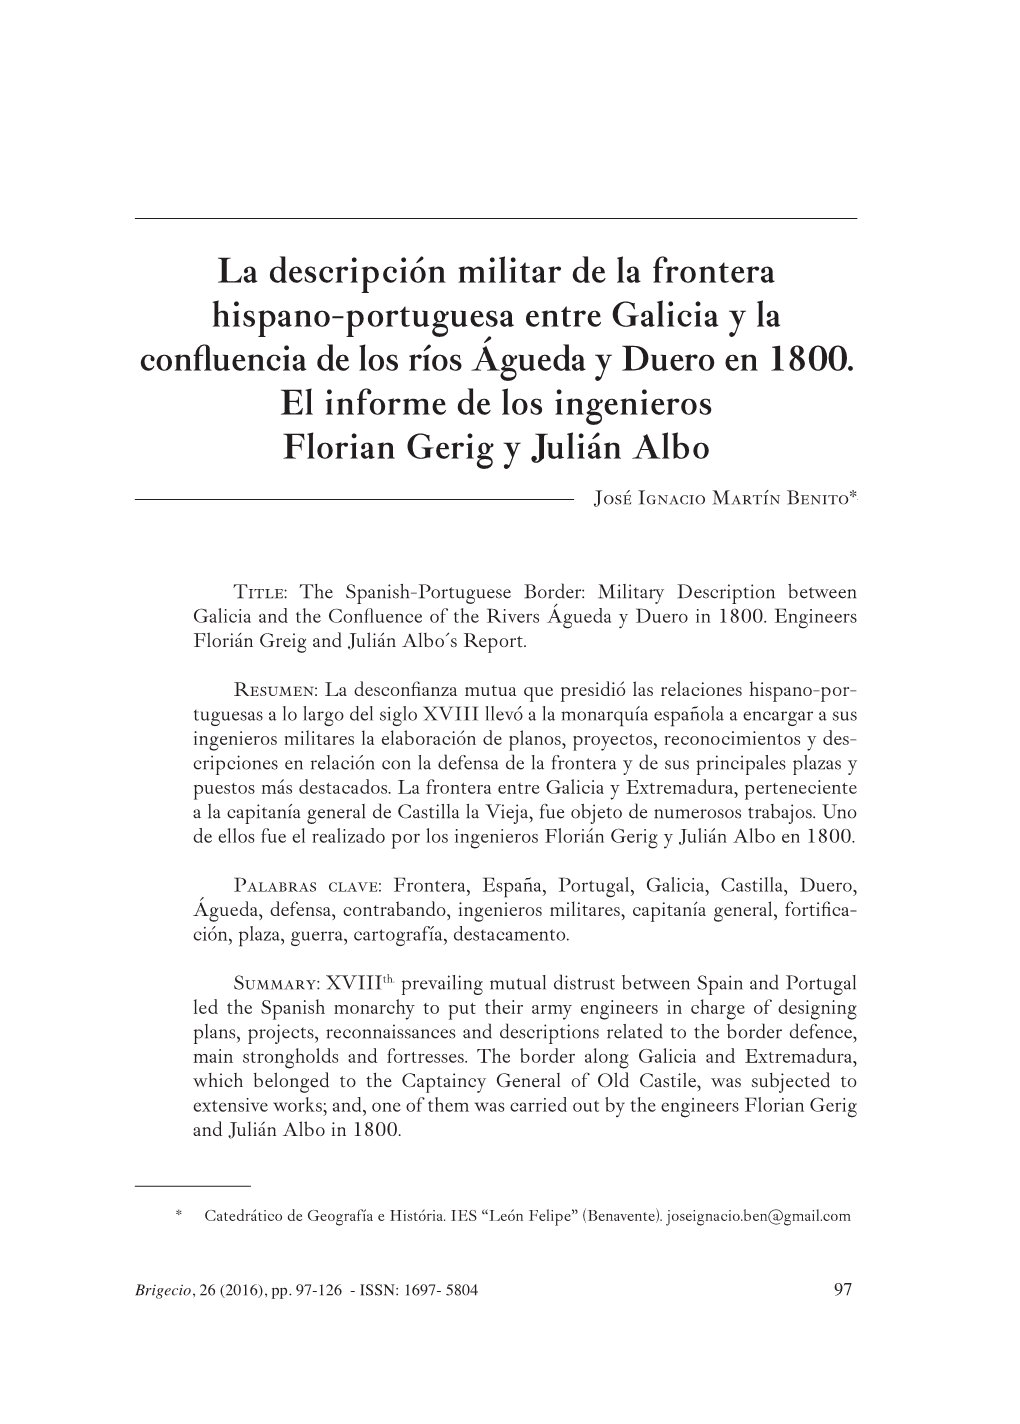 La Descripción Militar De La Frontera Hispano-Portuguesa Entre Galicia Y La Confluencia De Los Ríos Águeda Y Duero En 1800